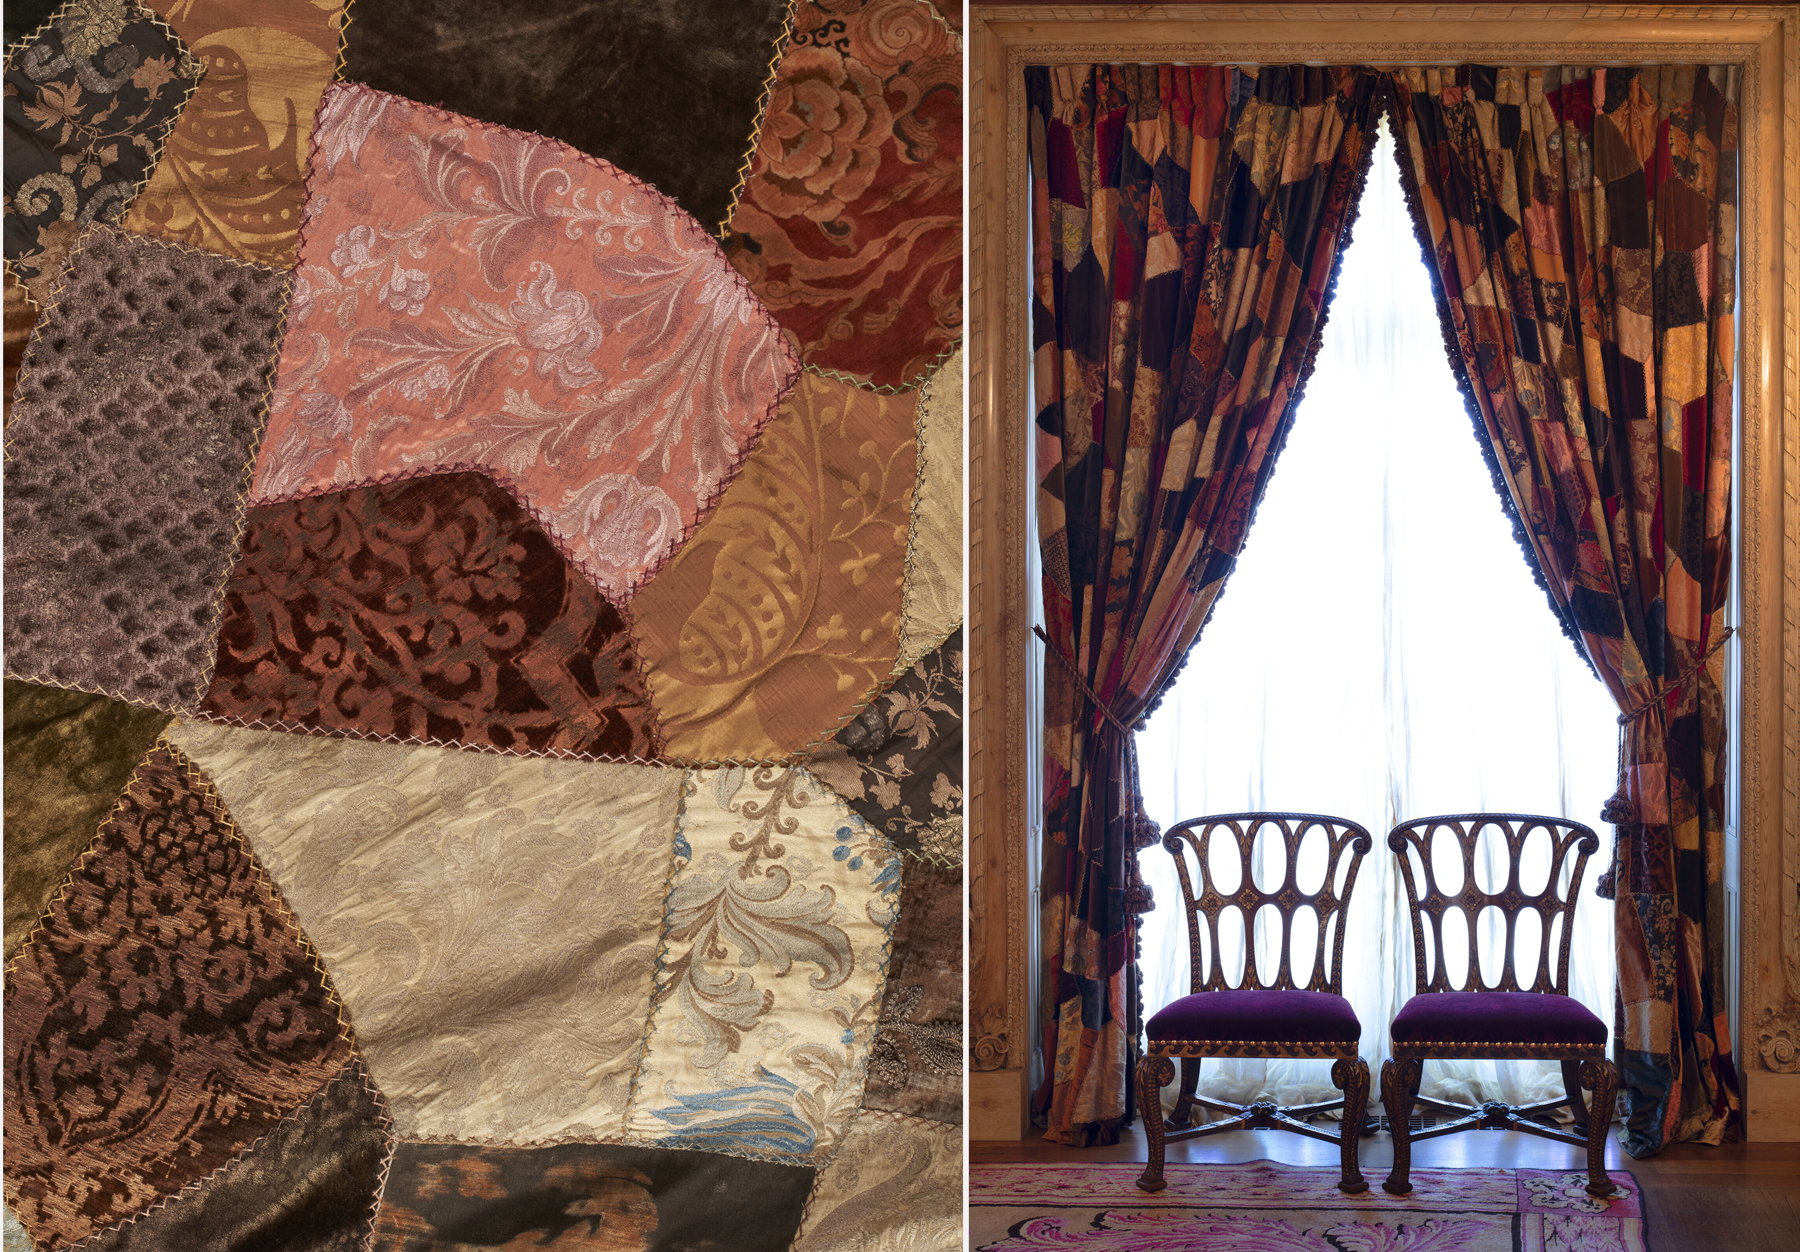 Текстиль из парижского дома Рудольфа Нуреева / Коллекция Энн и Гордона Гетти / фото Christieʹs